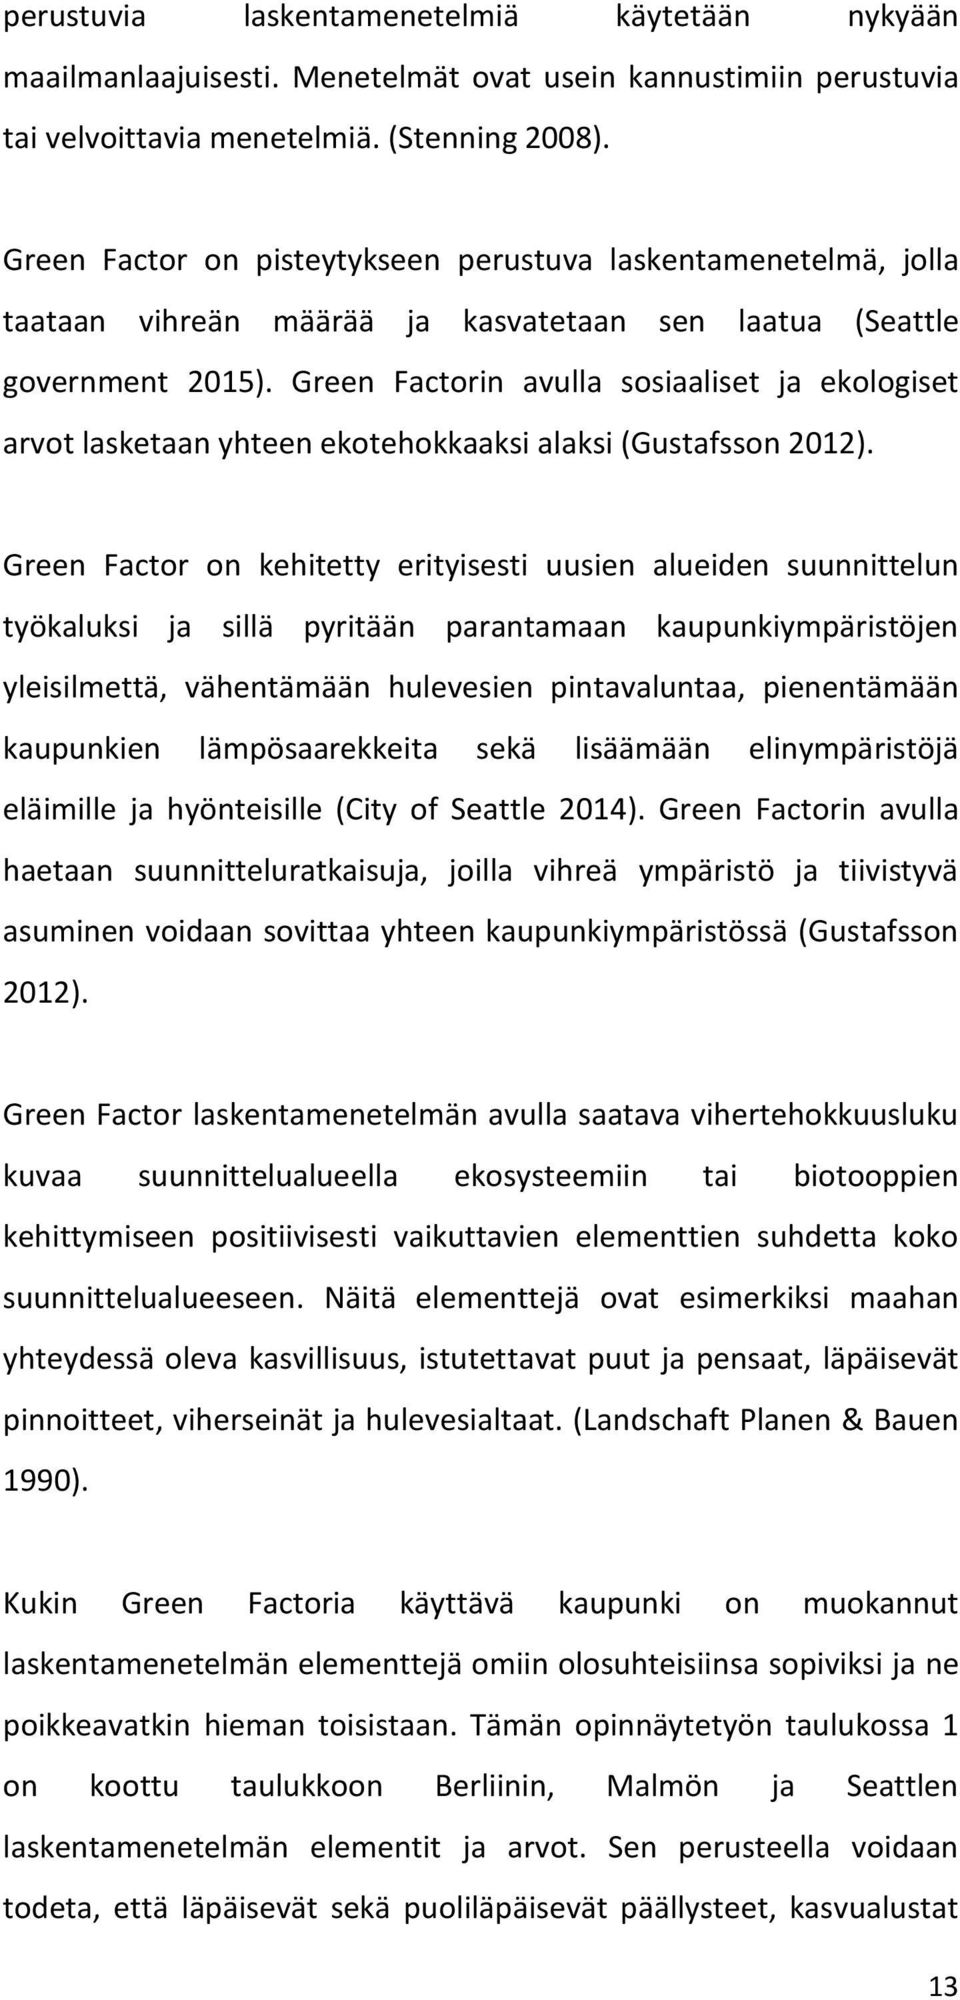 Green Factorin avulla sosiaaliset ja ekologiset arvot lasketaan yhteen ekotehokkaaksi alaksi (Gustafsson 2012).